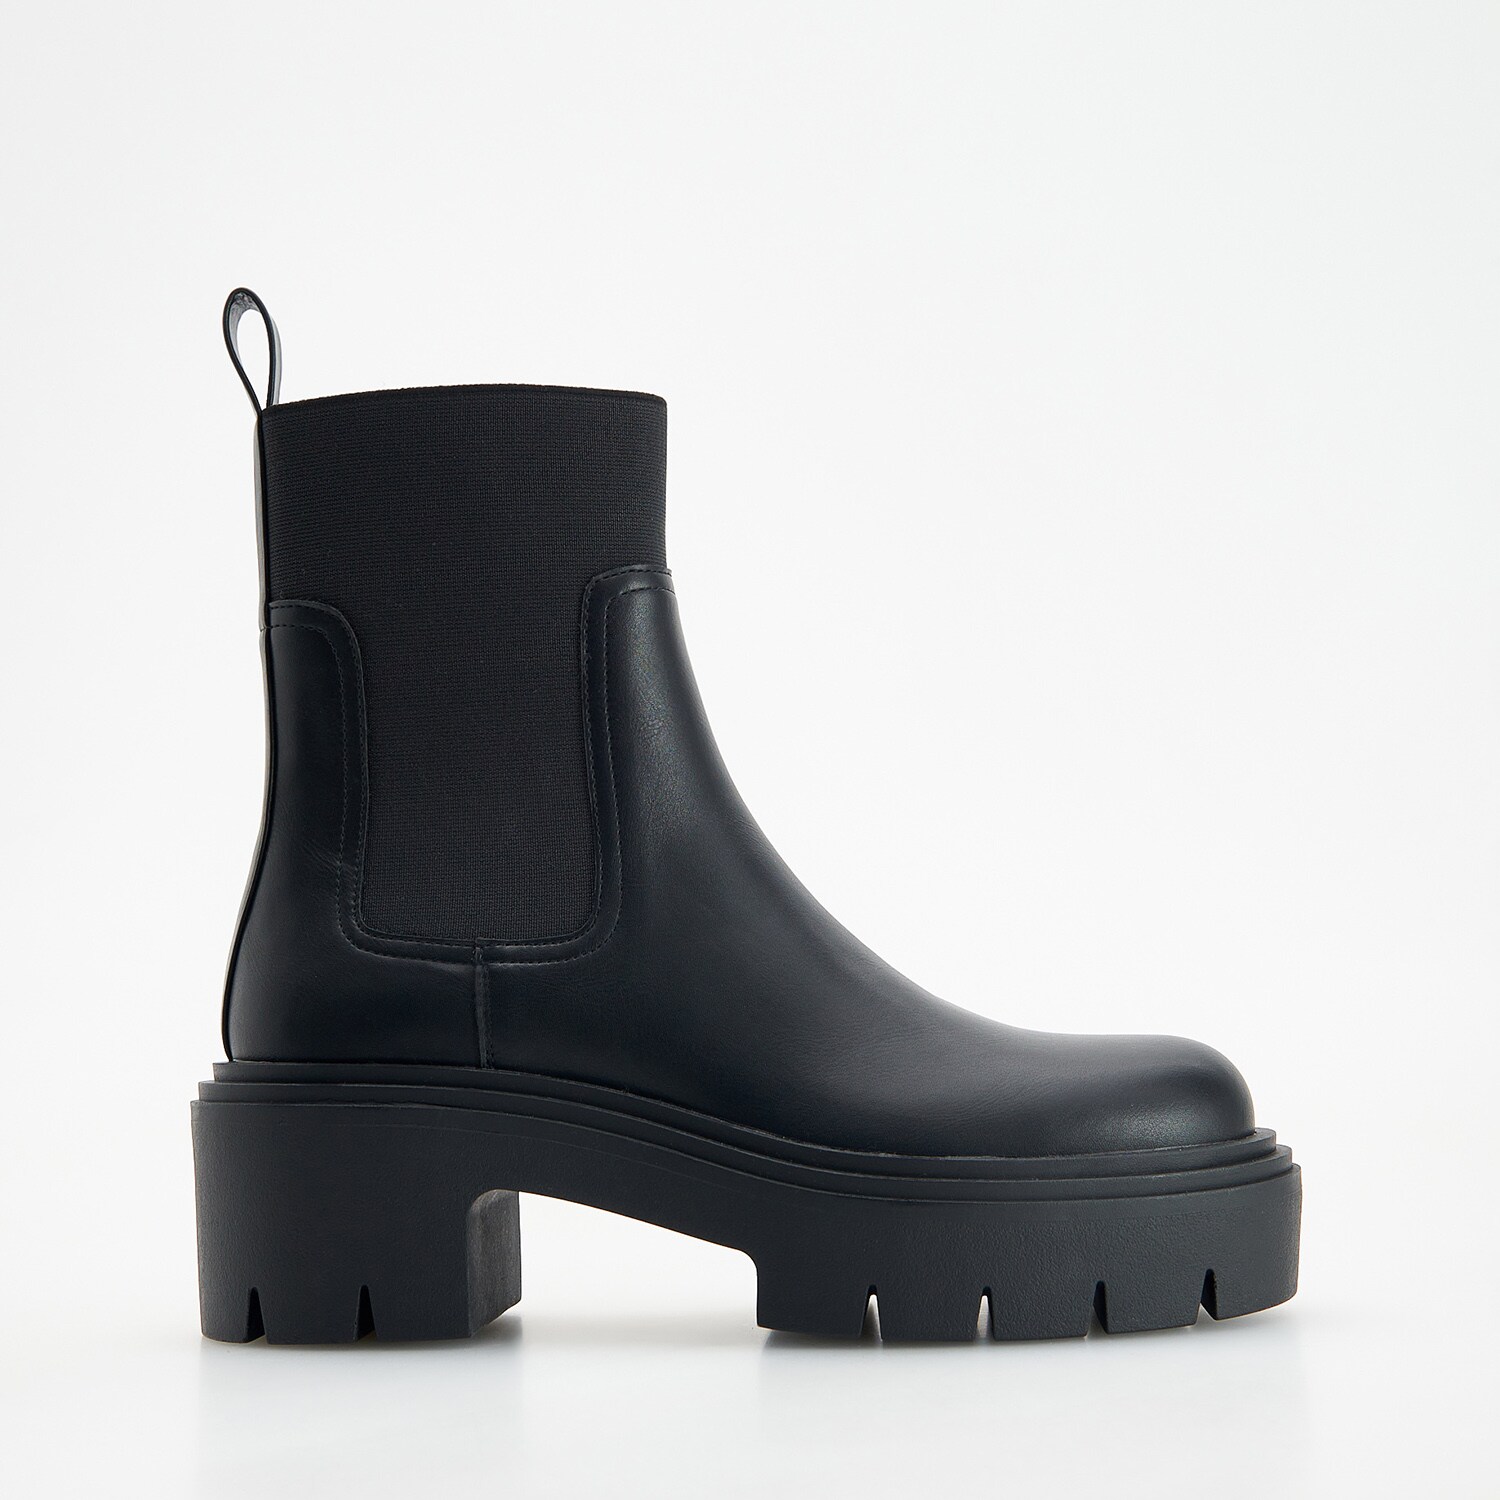 E-shop Reserved - Členkové topánky s vrúbkovanou podrážkou - Čierna